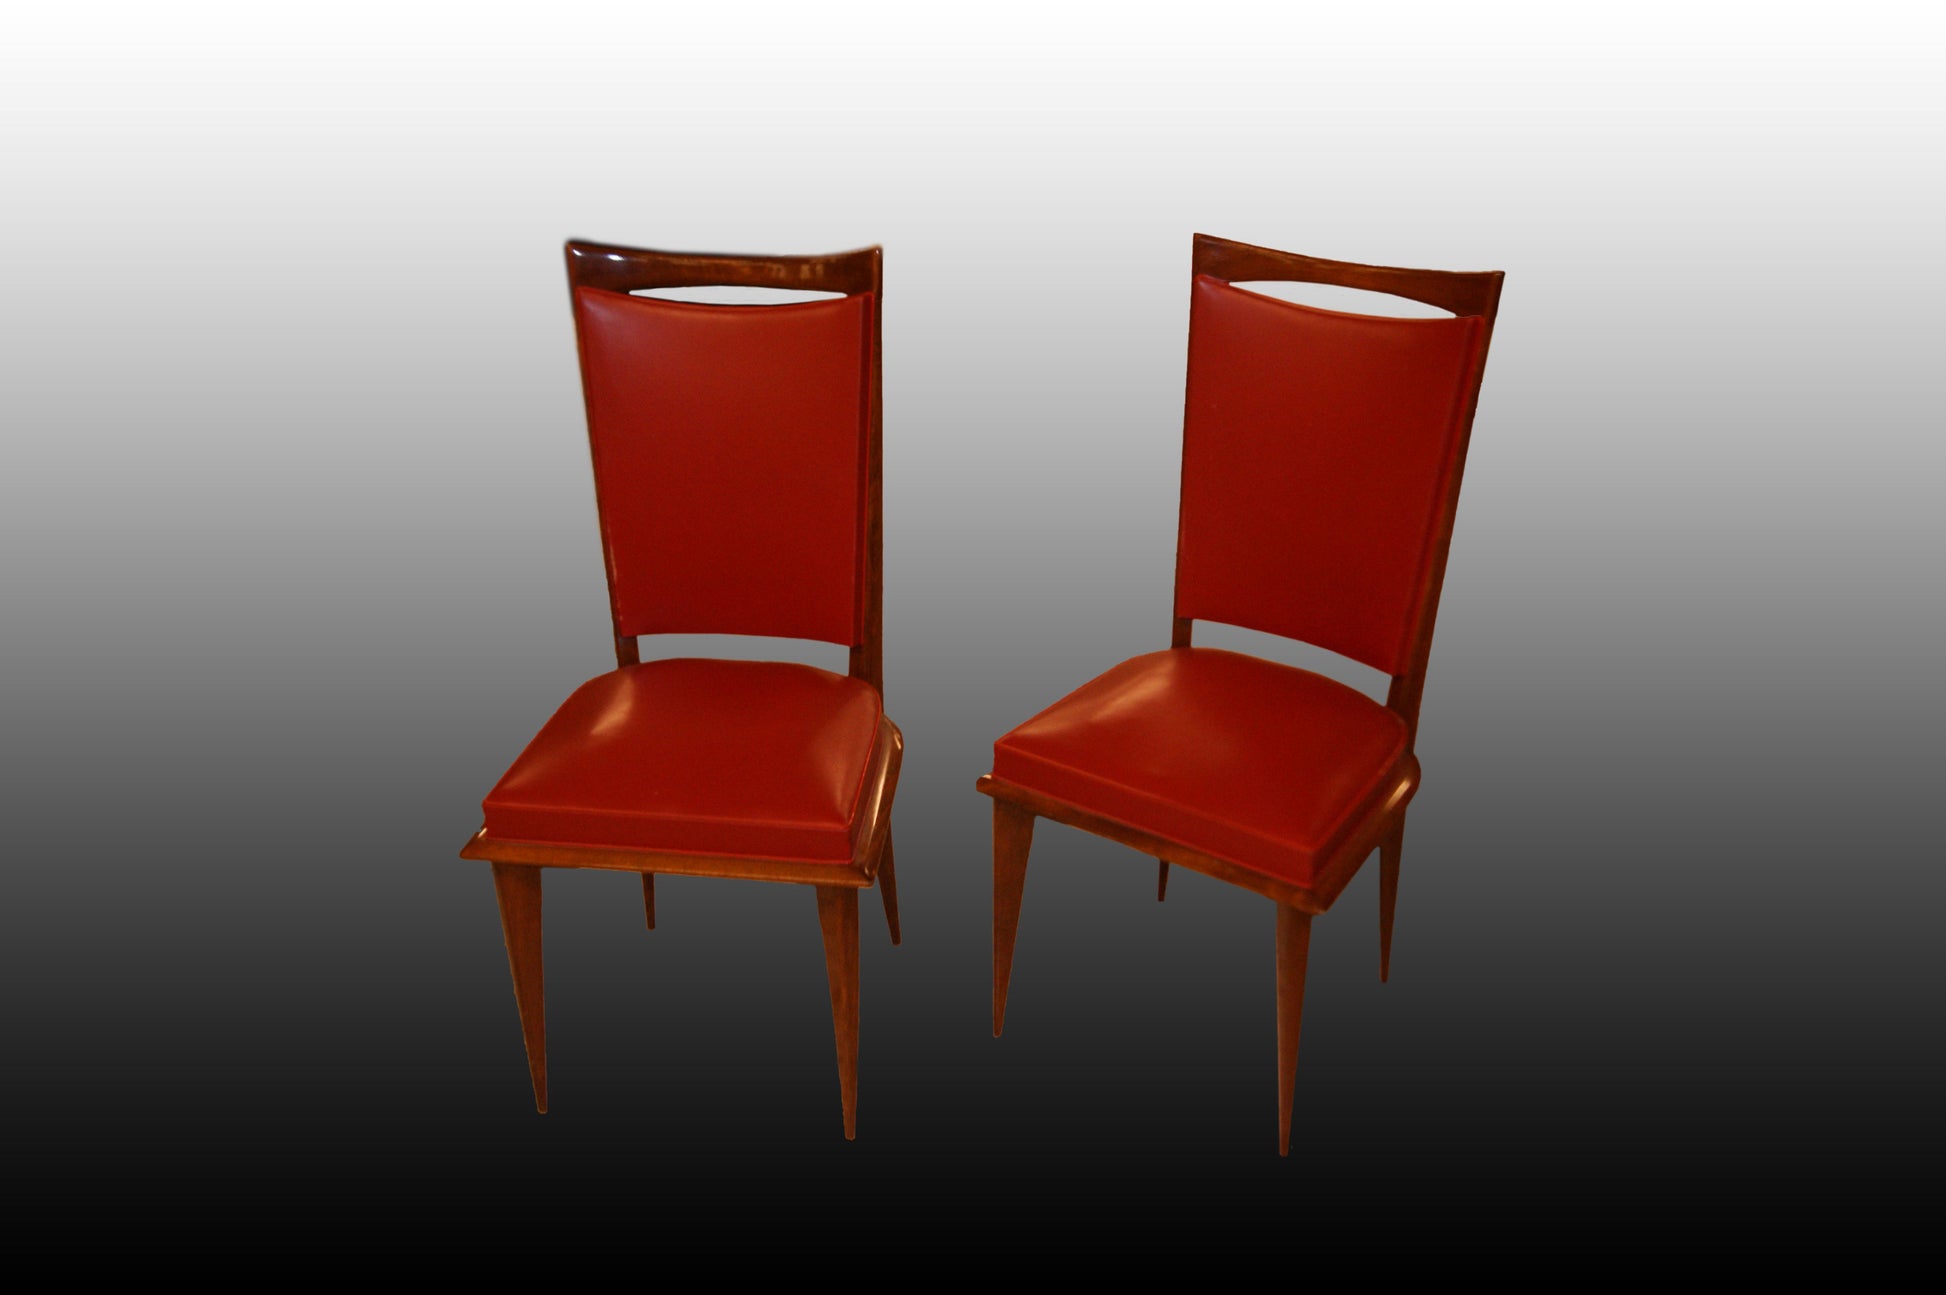 Gruppo di 4 sedie antiche stile Decò di inizio 1900 in similpelle rossa